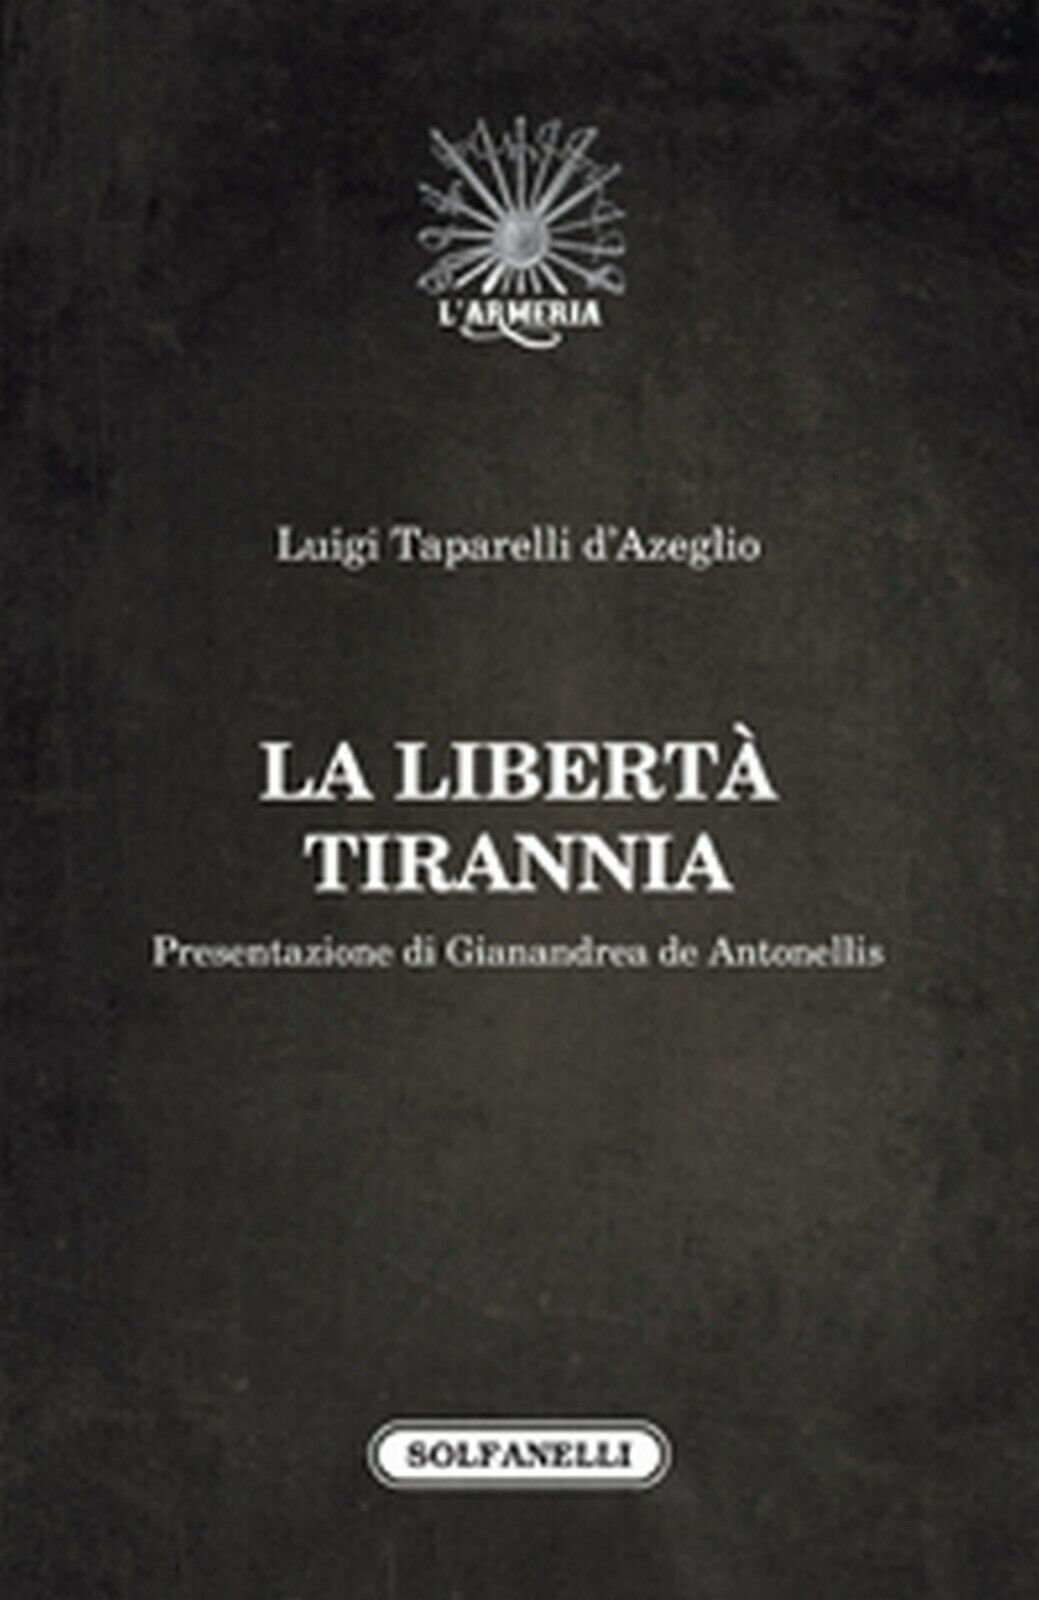 LA LIBERT? TIRANNIA  di Luigi Taparelli d'Azeglio,  Solfanelli Edizioni